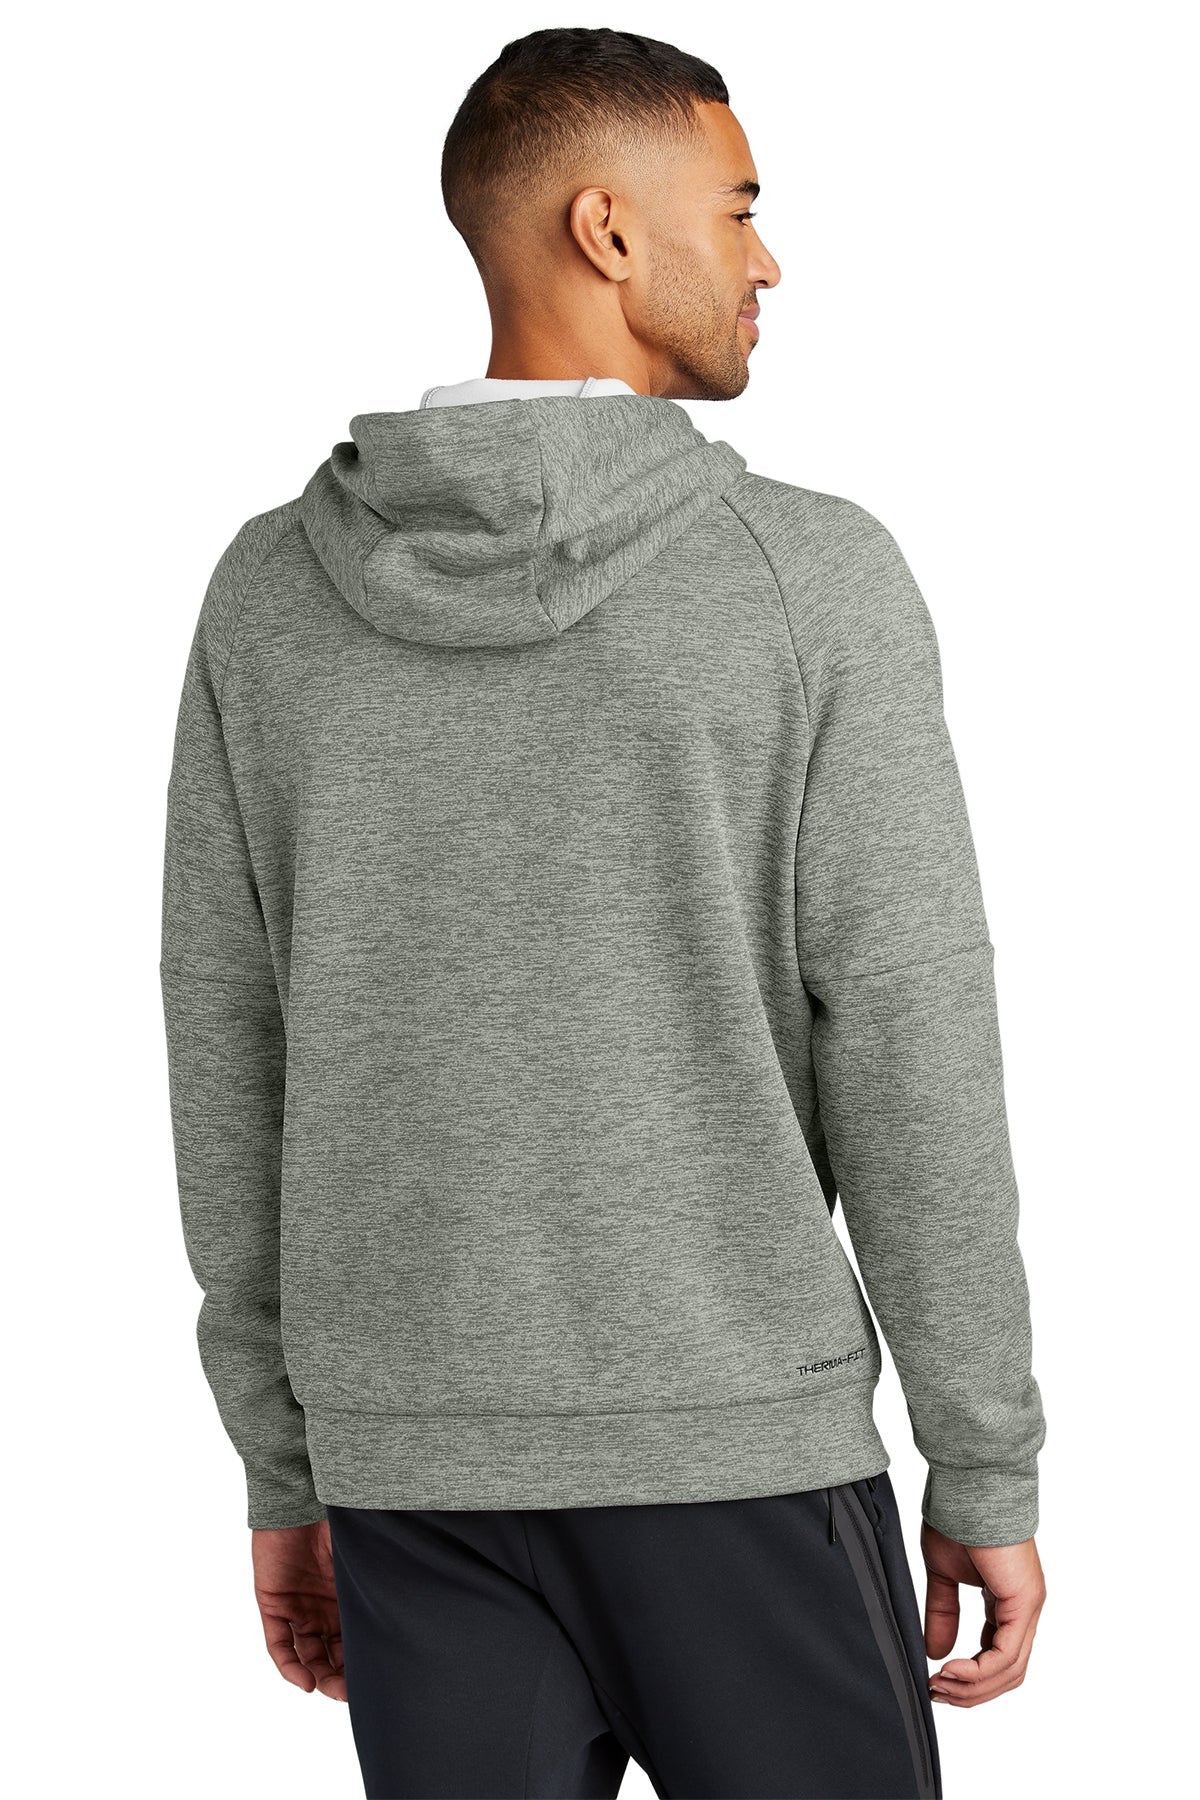 Nike Therma-FIT Pocket Pullover Branded Hoodies, Dark Grey Heather